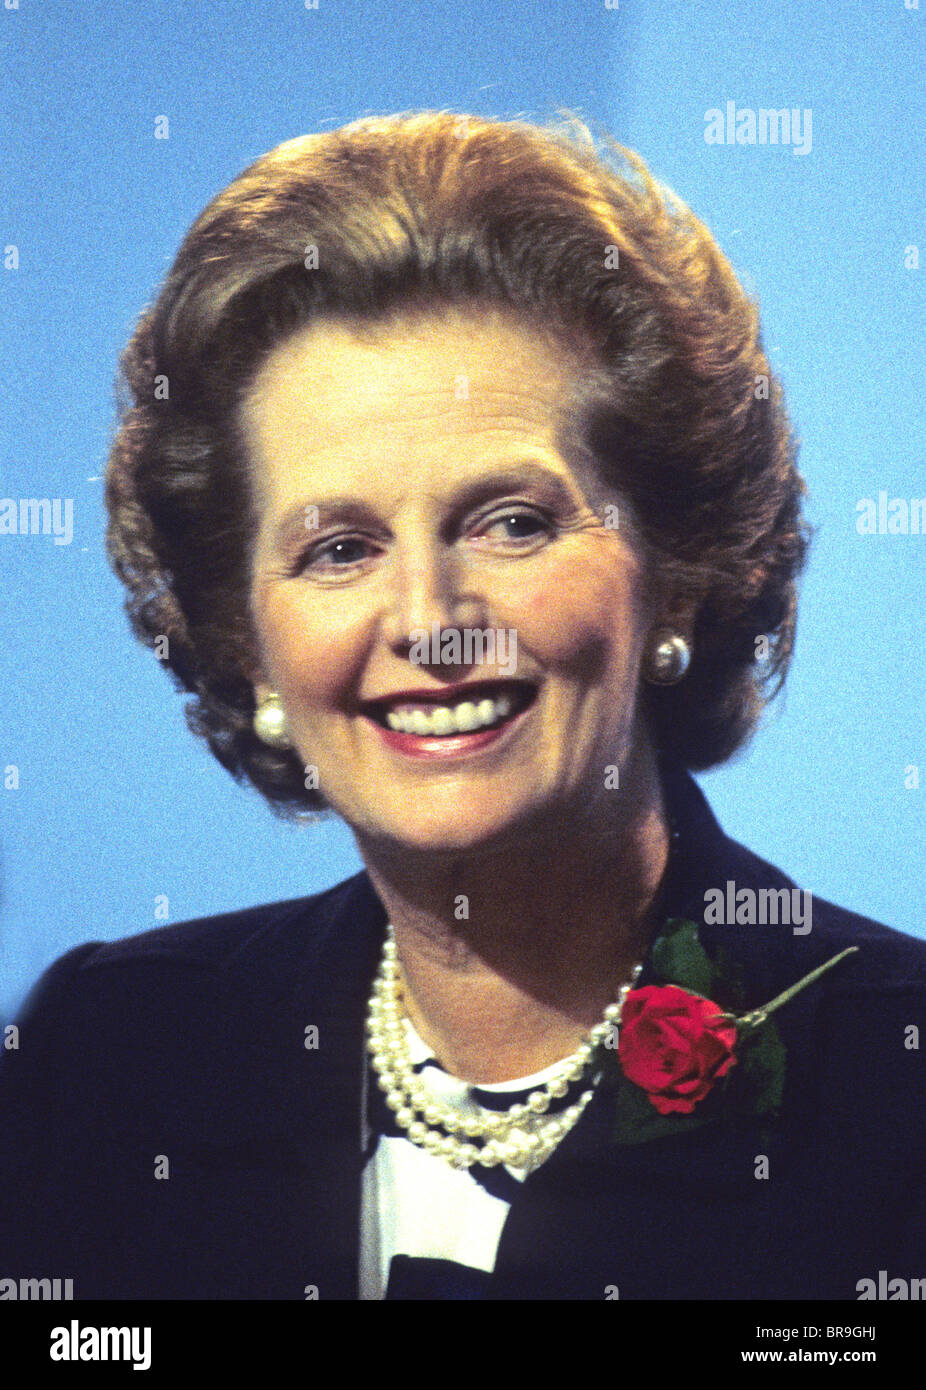 Margaret Thatcher auf dem Höhepunkt ihrer Kräfte in den frühen 1980 von seltenen Konstellation von Farbbildern "Ausdruck". Stockfoto